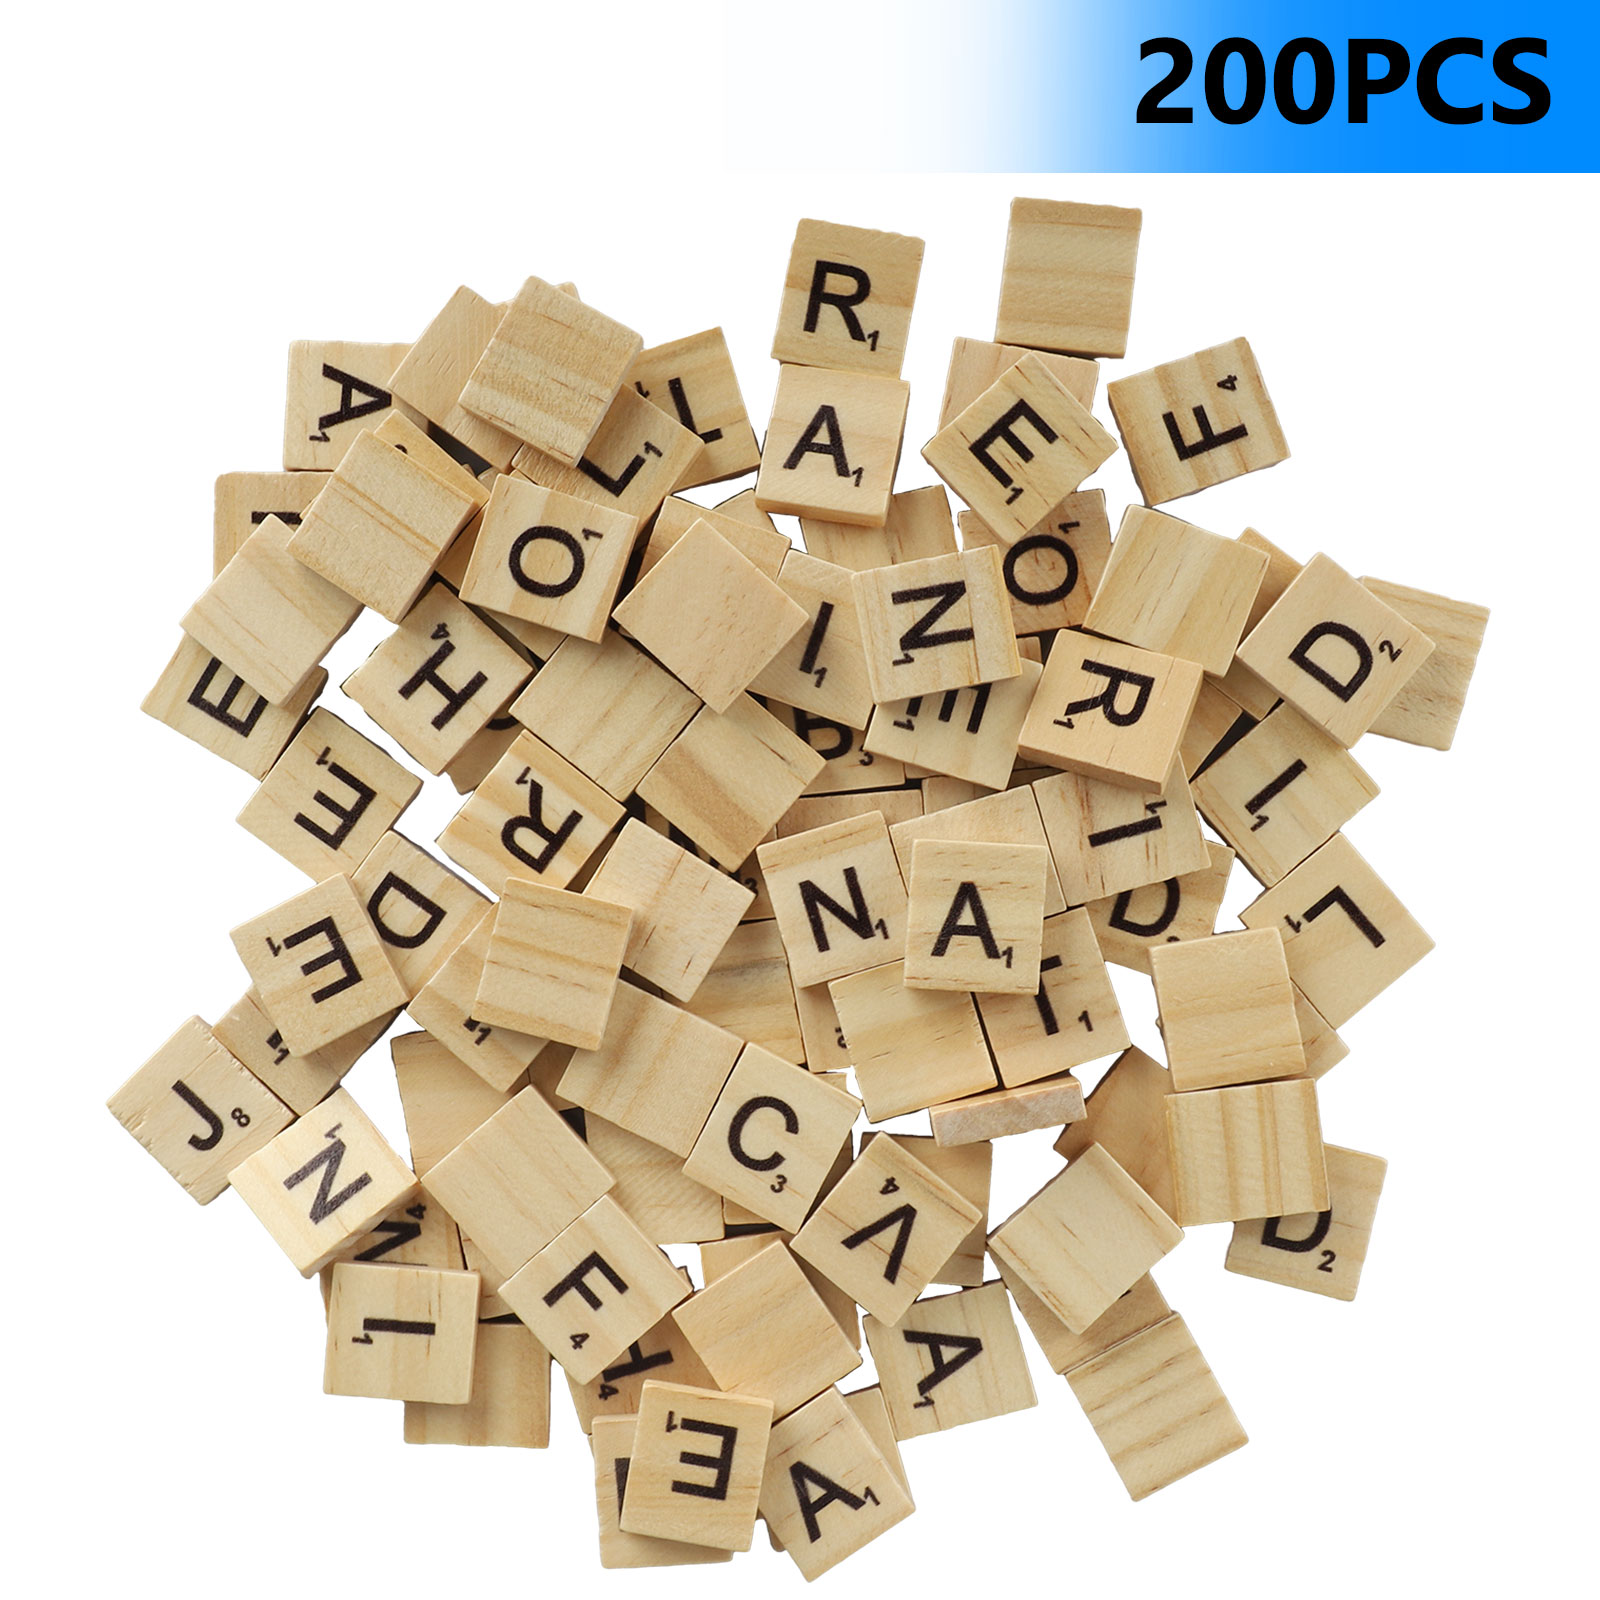 Scrabble piedra de repuesto letras madera pieza de repuesto venta al por menor Spear bänkchen 